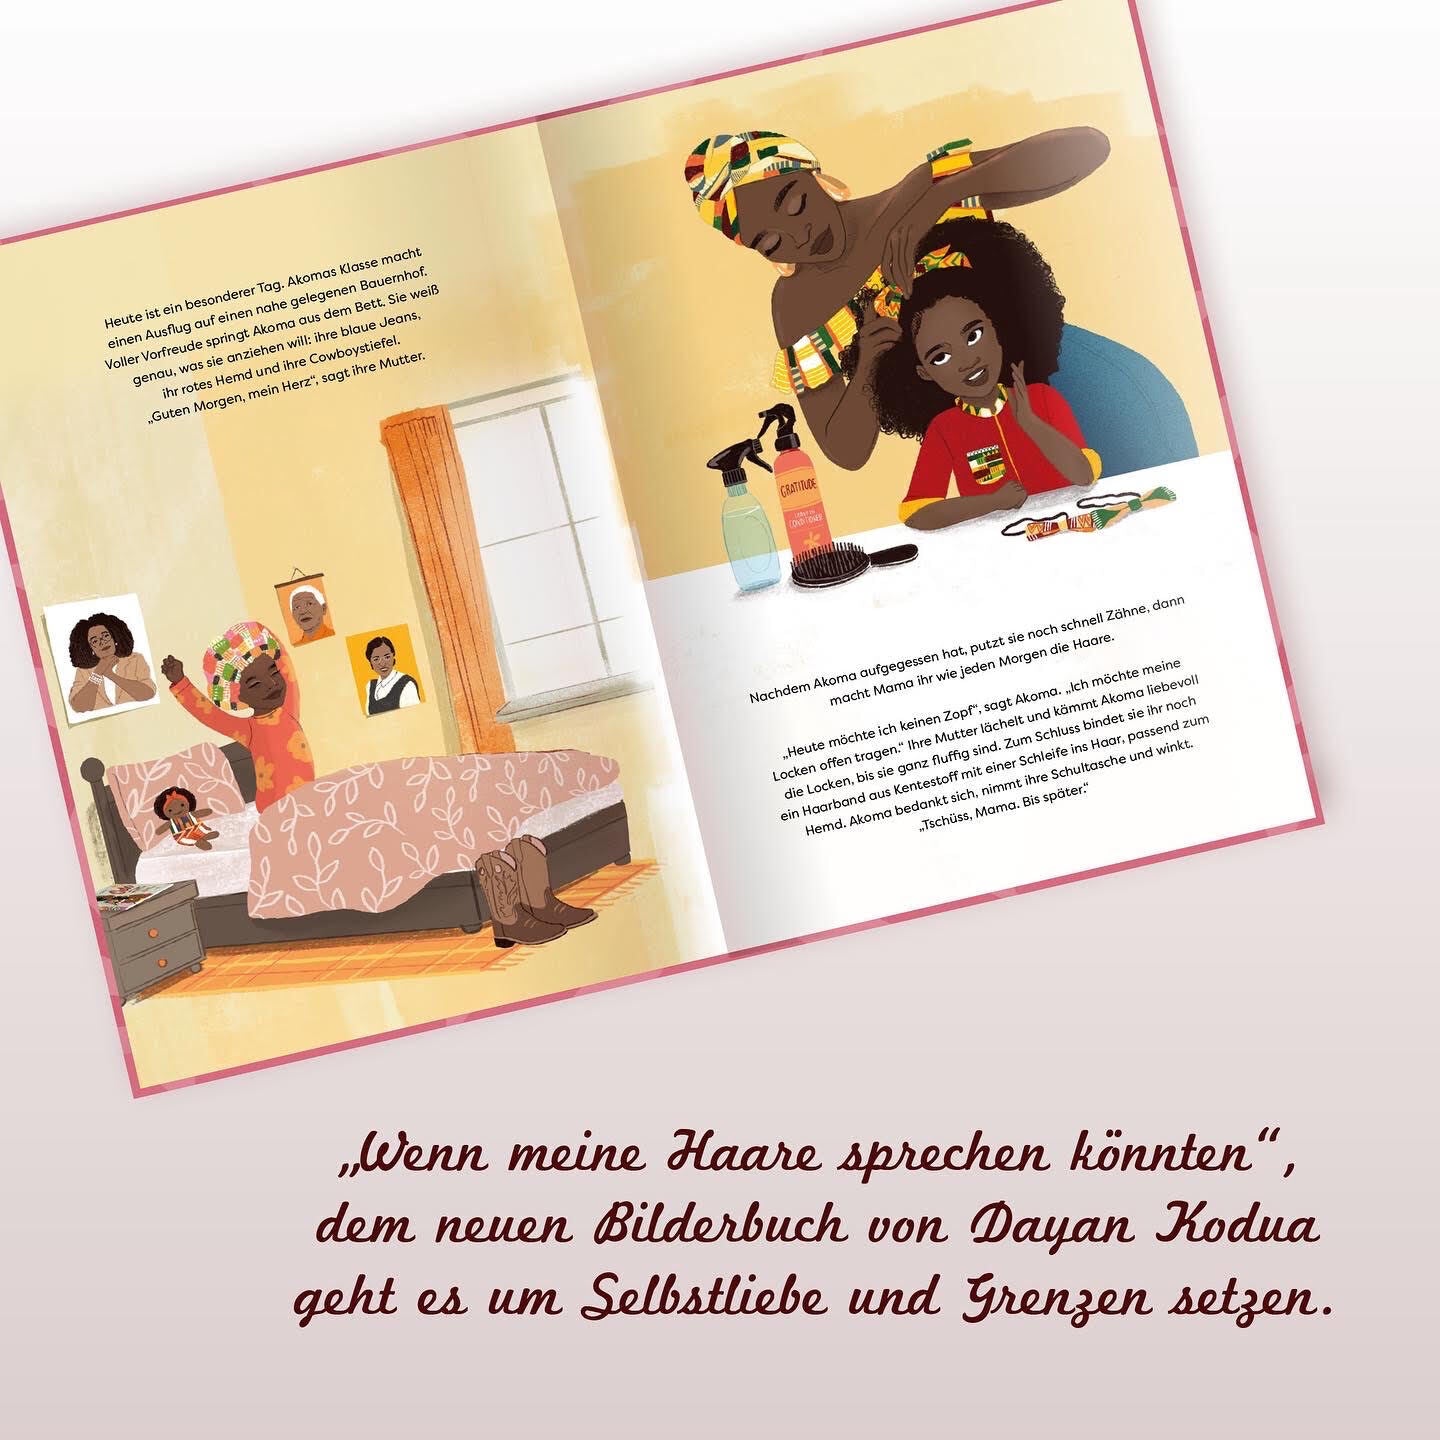 Die beiden Seiten aus dem Kinderbuch "Wenn meine Haare sprechen könnten" zeigt links die Illustration von einem Kinderzimmer und einem Bett. Ein Mädchen streckt sich im Bett. Auf der rechten Seite sitzt das Mädchen am Tisch und bekommt von einer Frau die Haare gemacht.